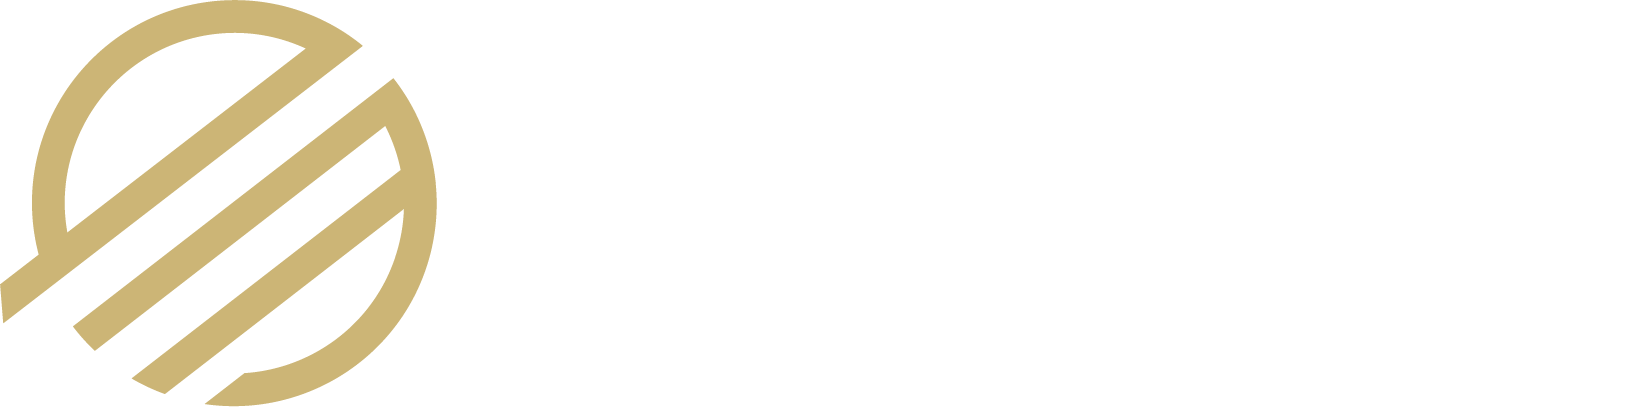 DexMob Logo horizontal white Text